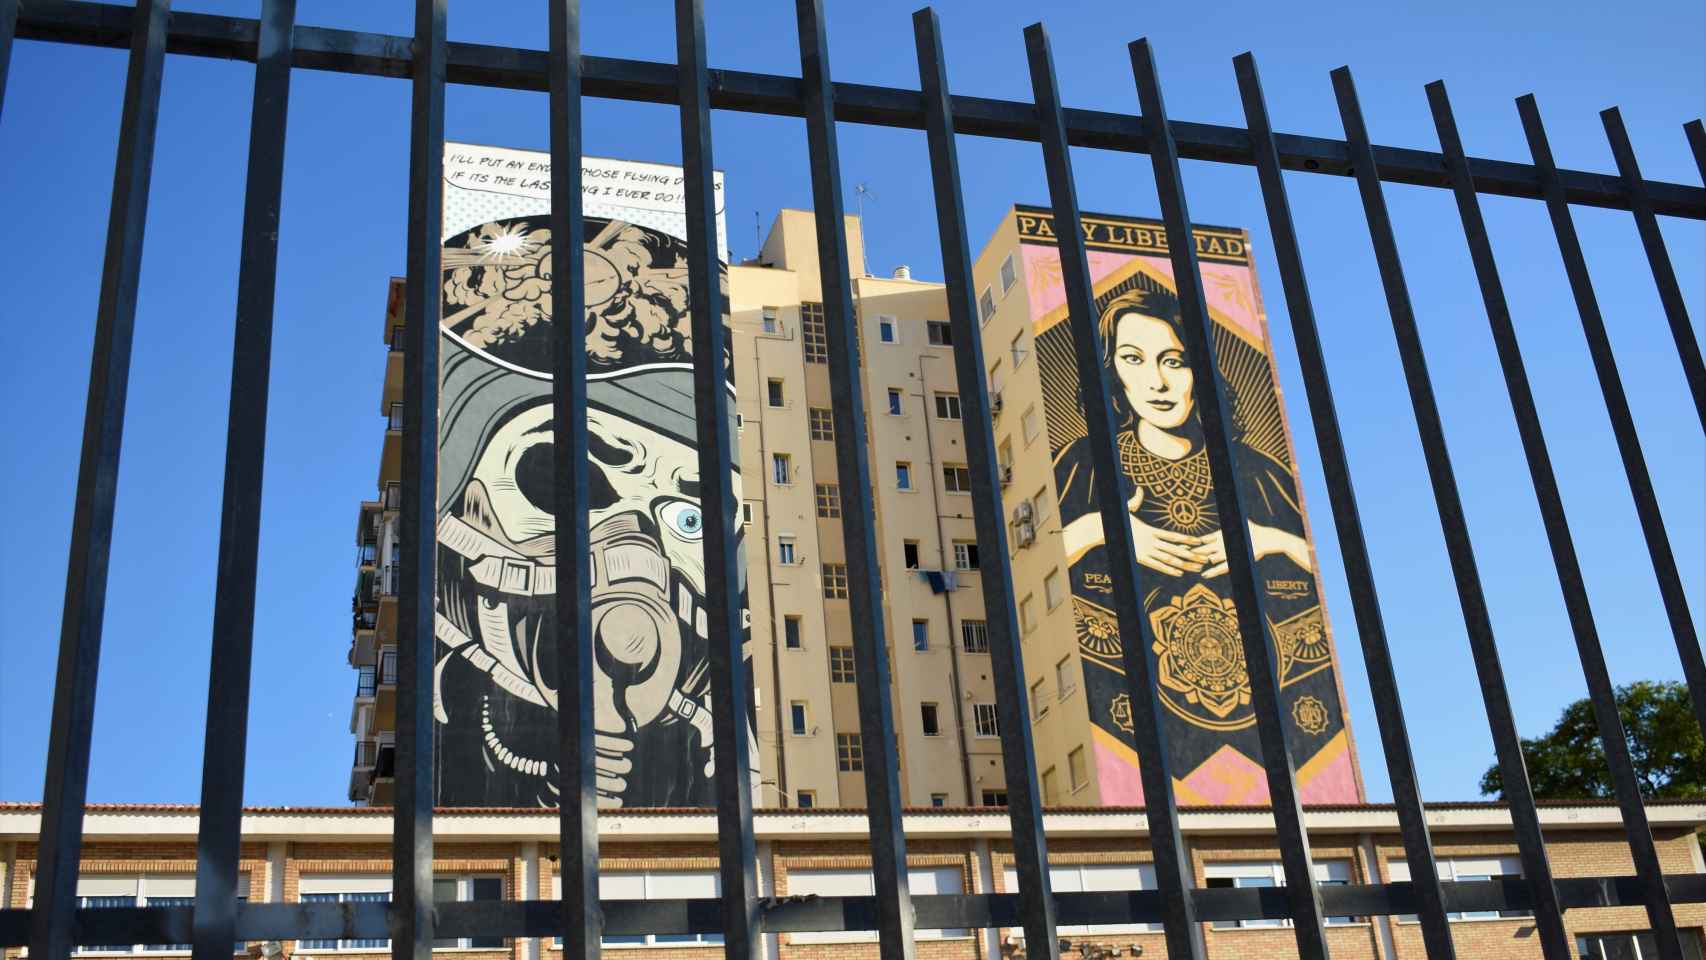 Los murales de D*Face y Obey coronan la fachada contigua al Colegio Federico García Lorca.